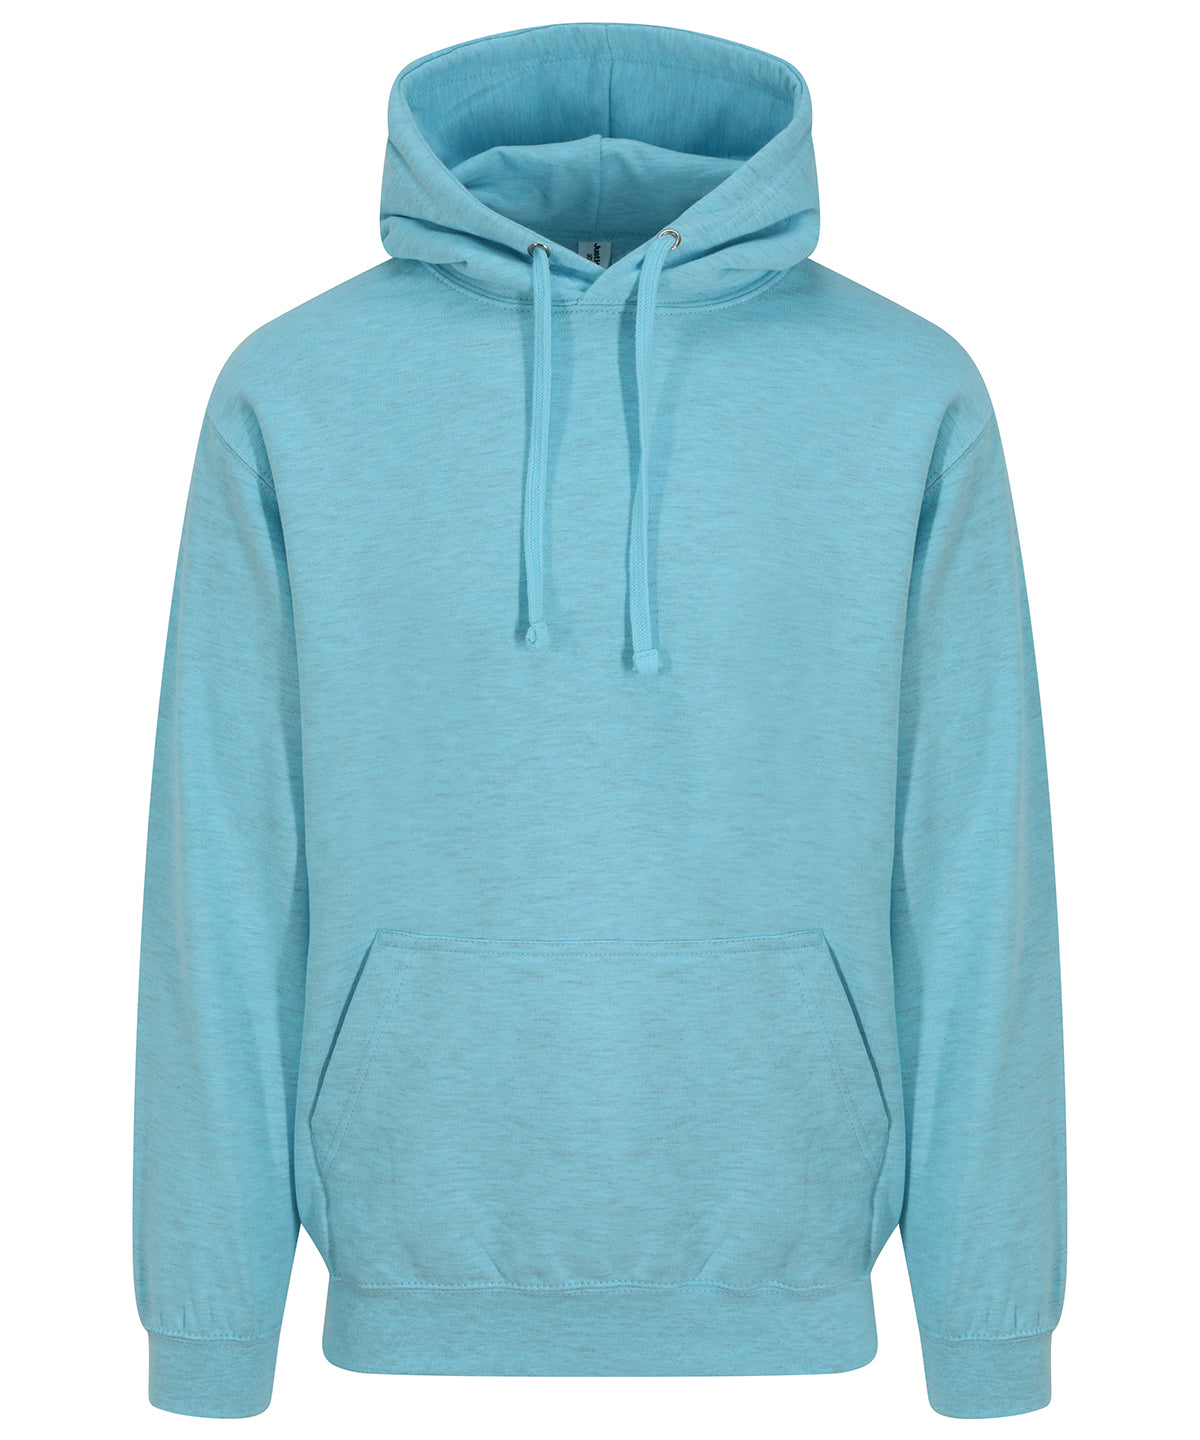 Personalised Hoodies - Turquoise AWDis Just Hoods Surf hoodie